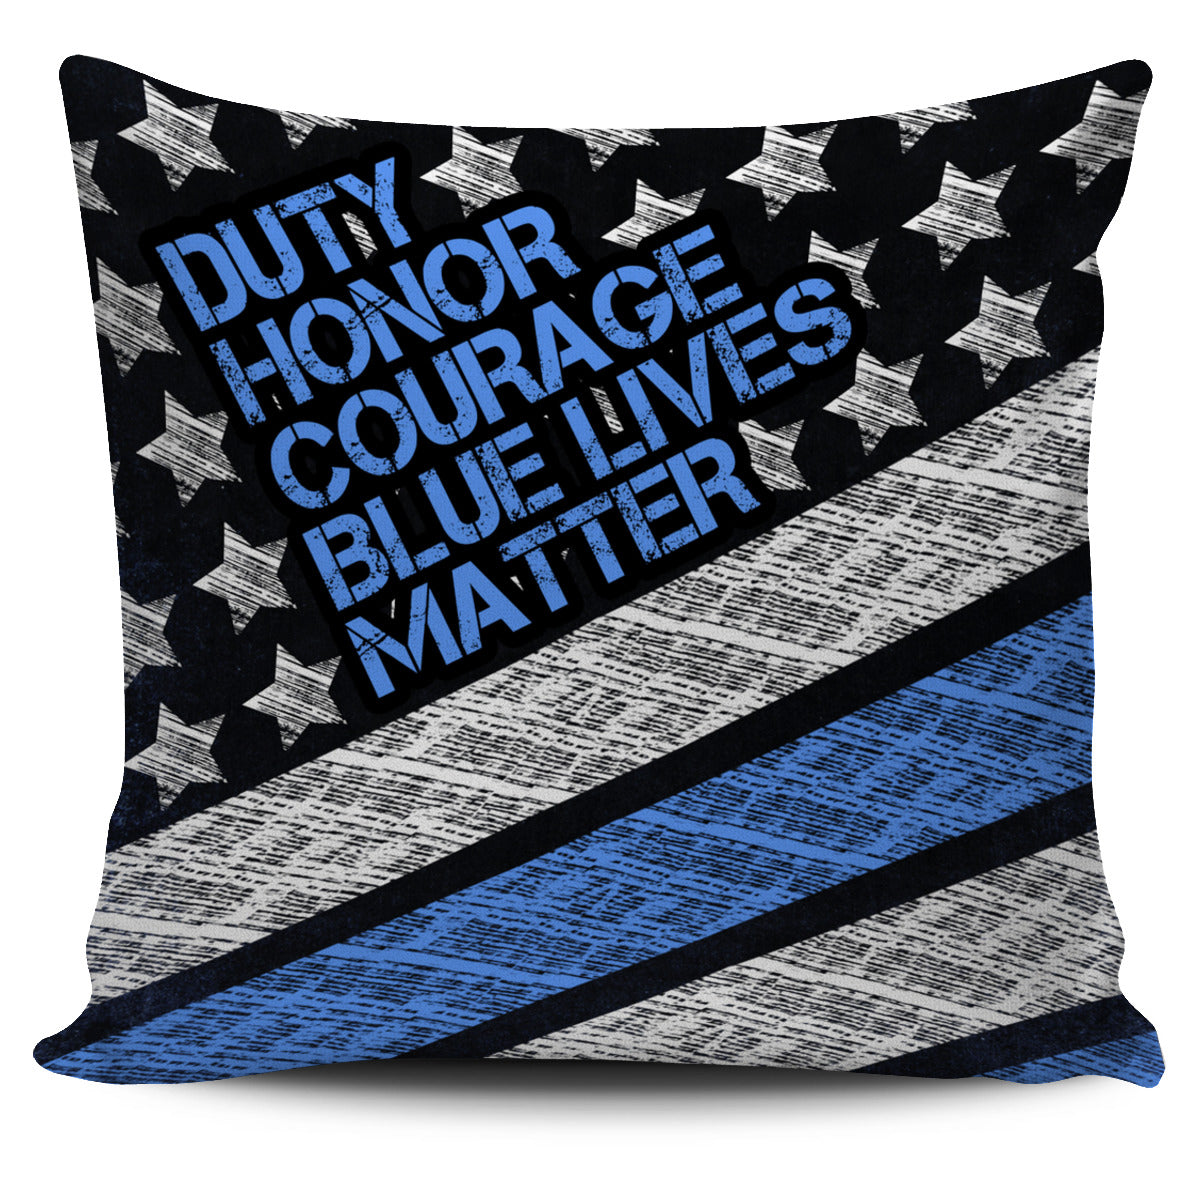 Blue Lives Matter Pillow Cover